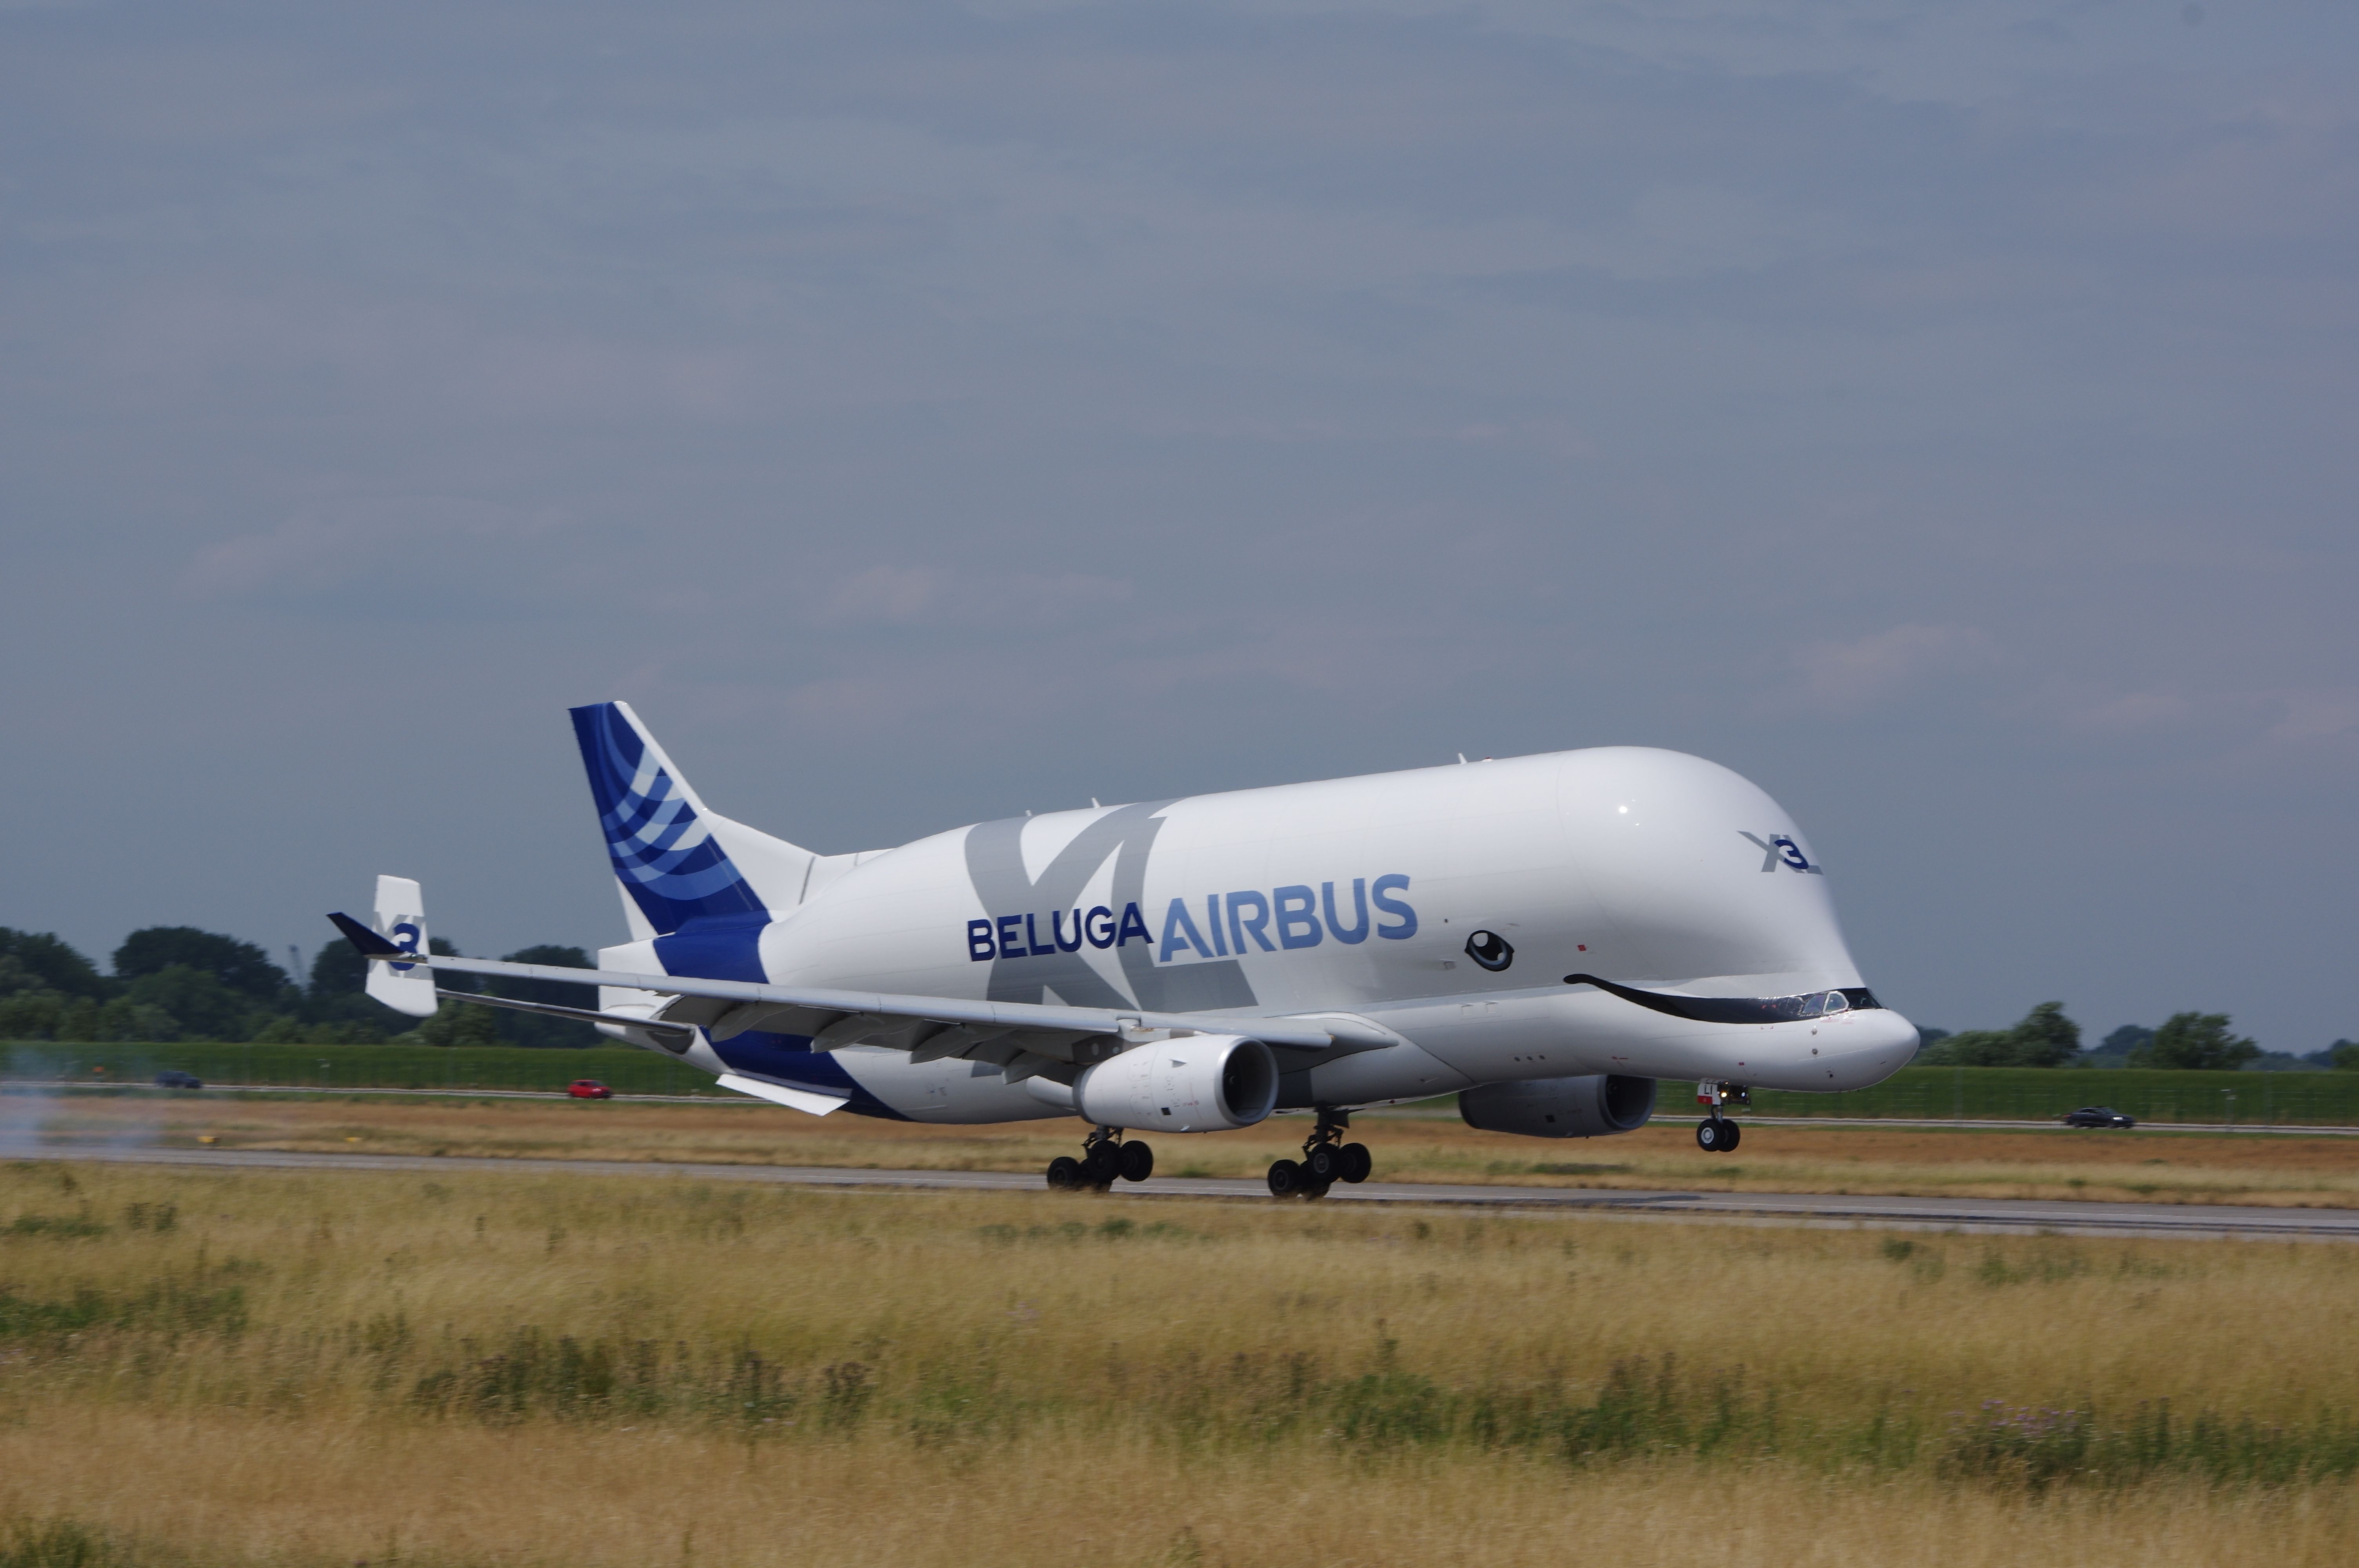 Airbus BelugaXL taxiing at an airport